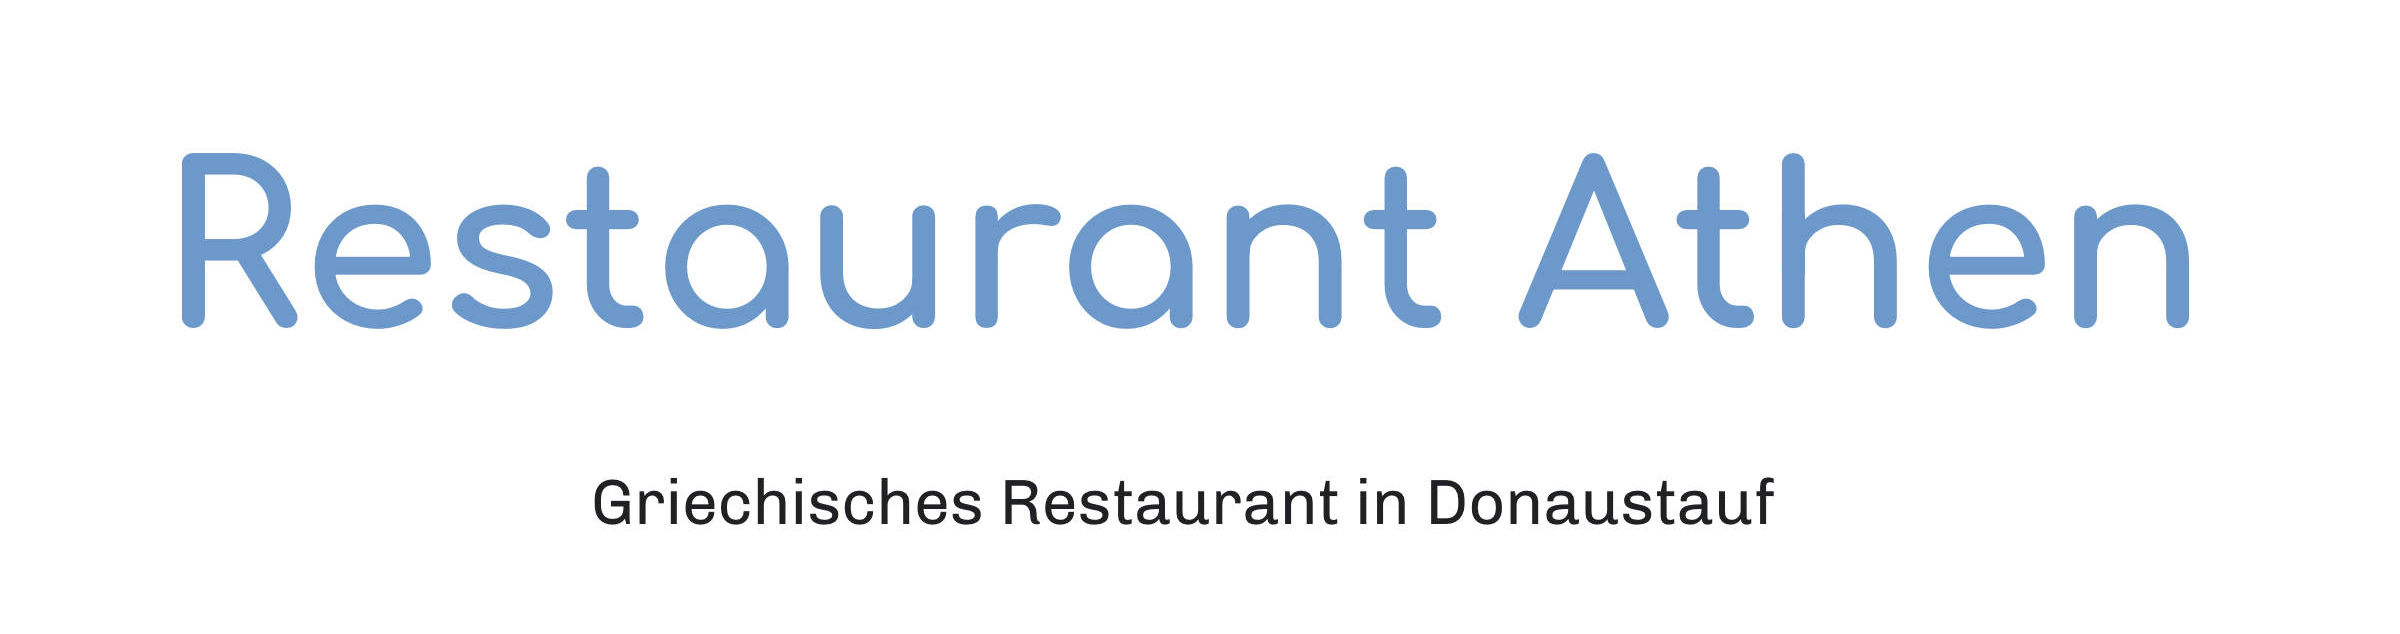 Restaurant Athen Donaustauf